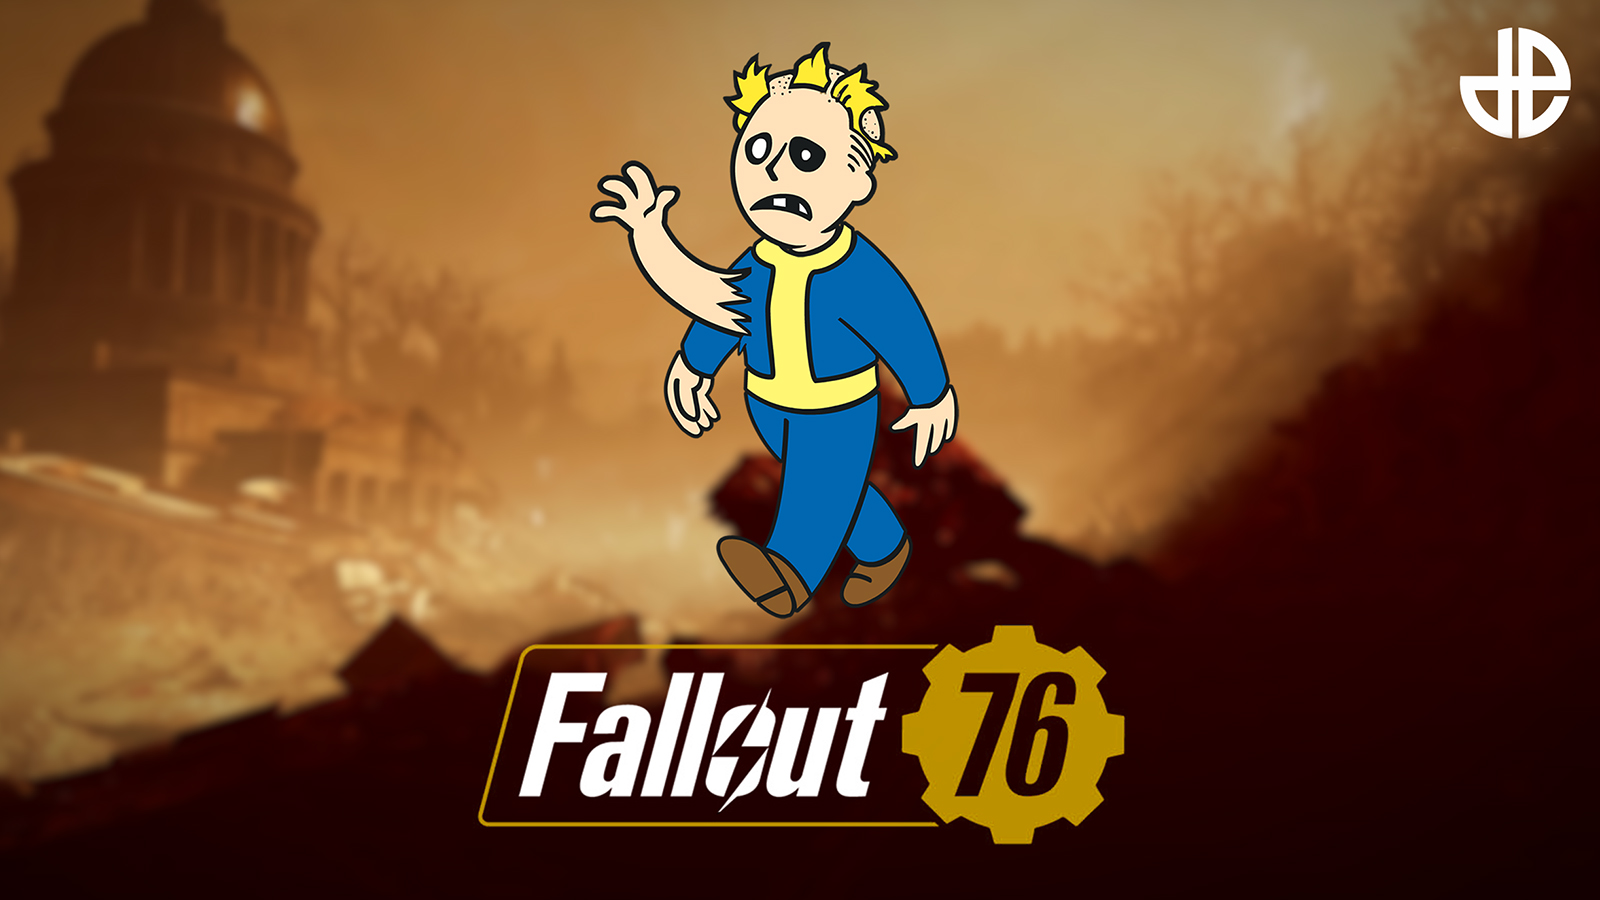 Gambar dengan logo Fallout 76 dan ikon mutasi